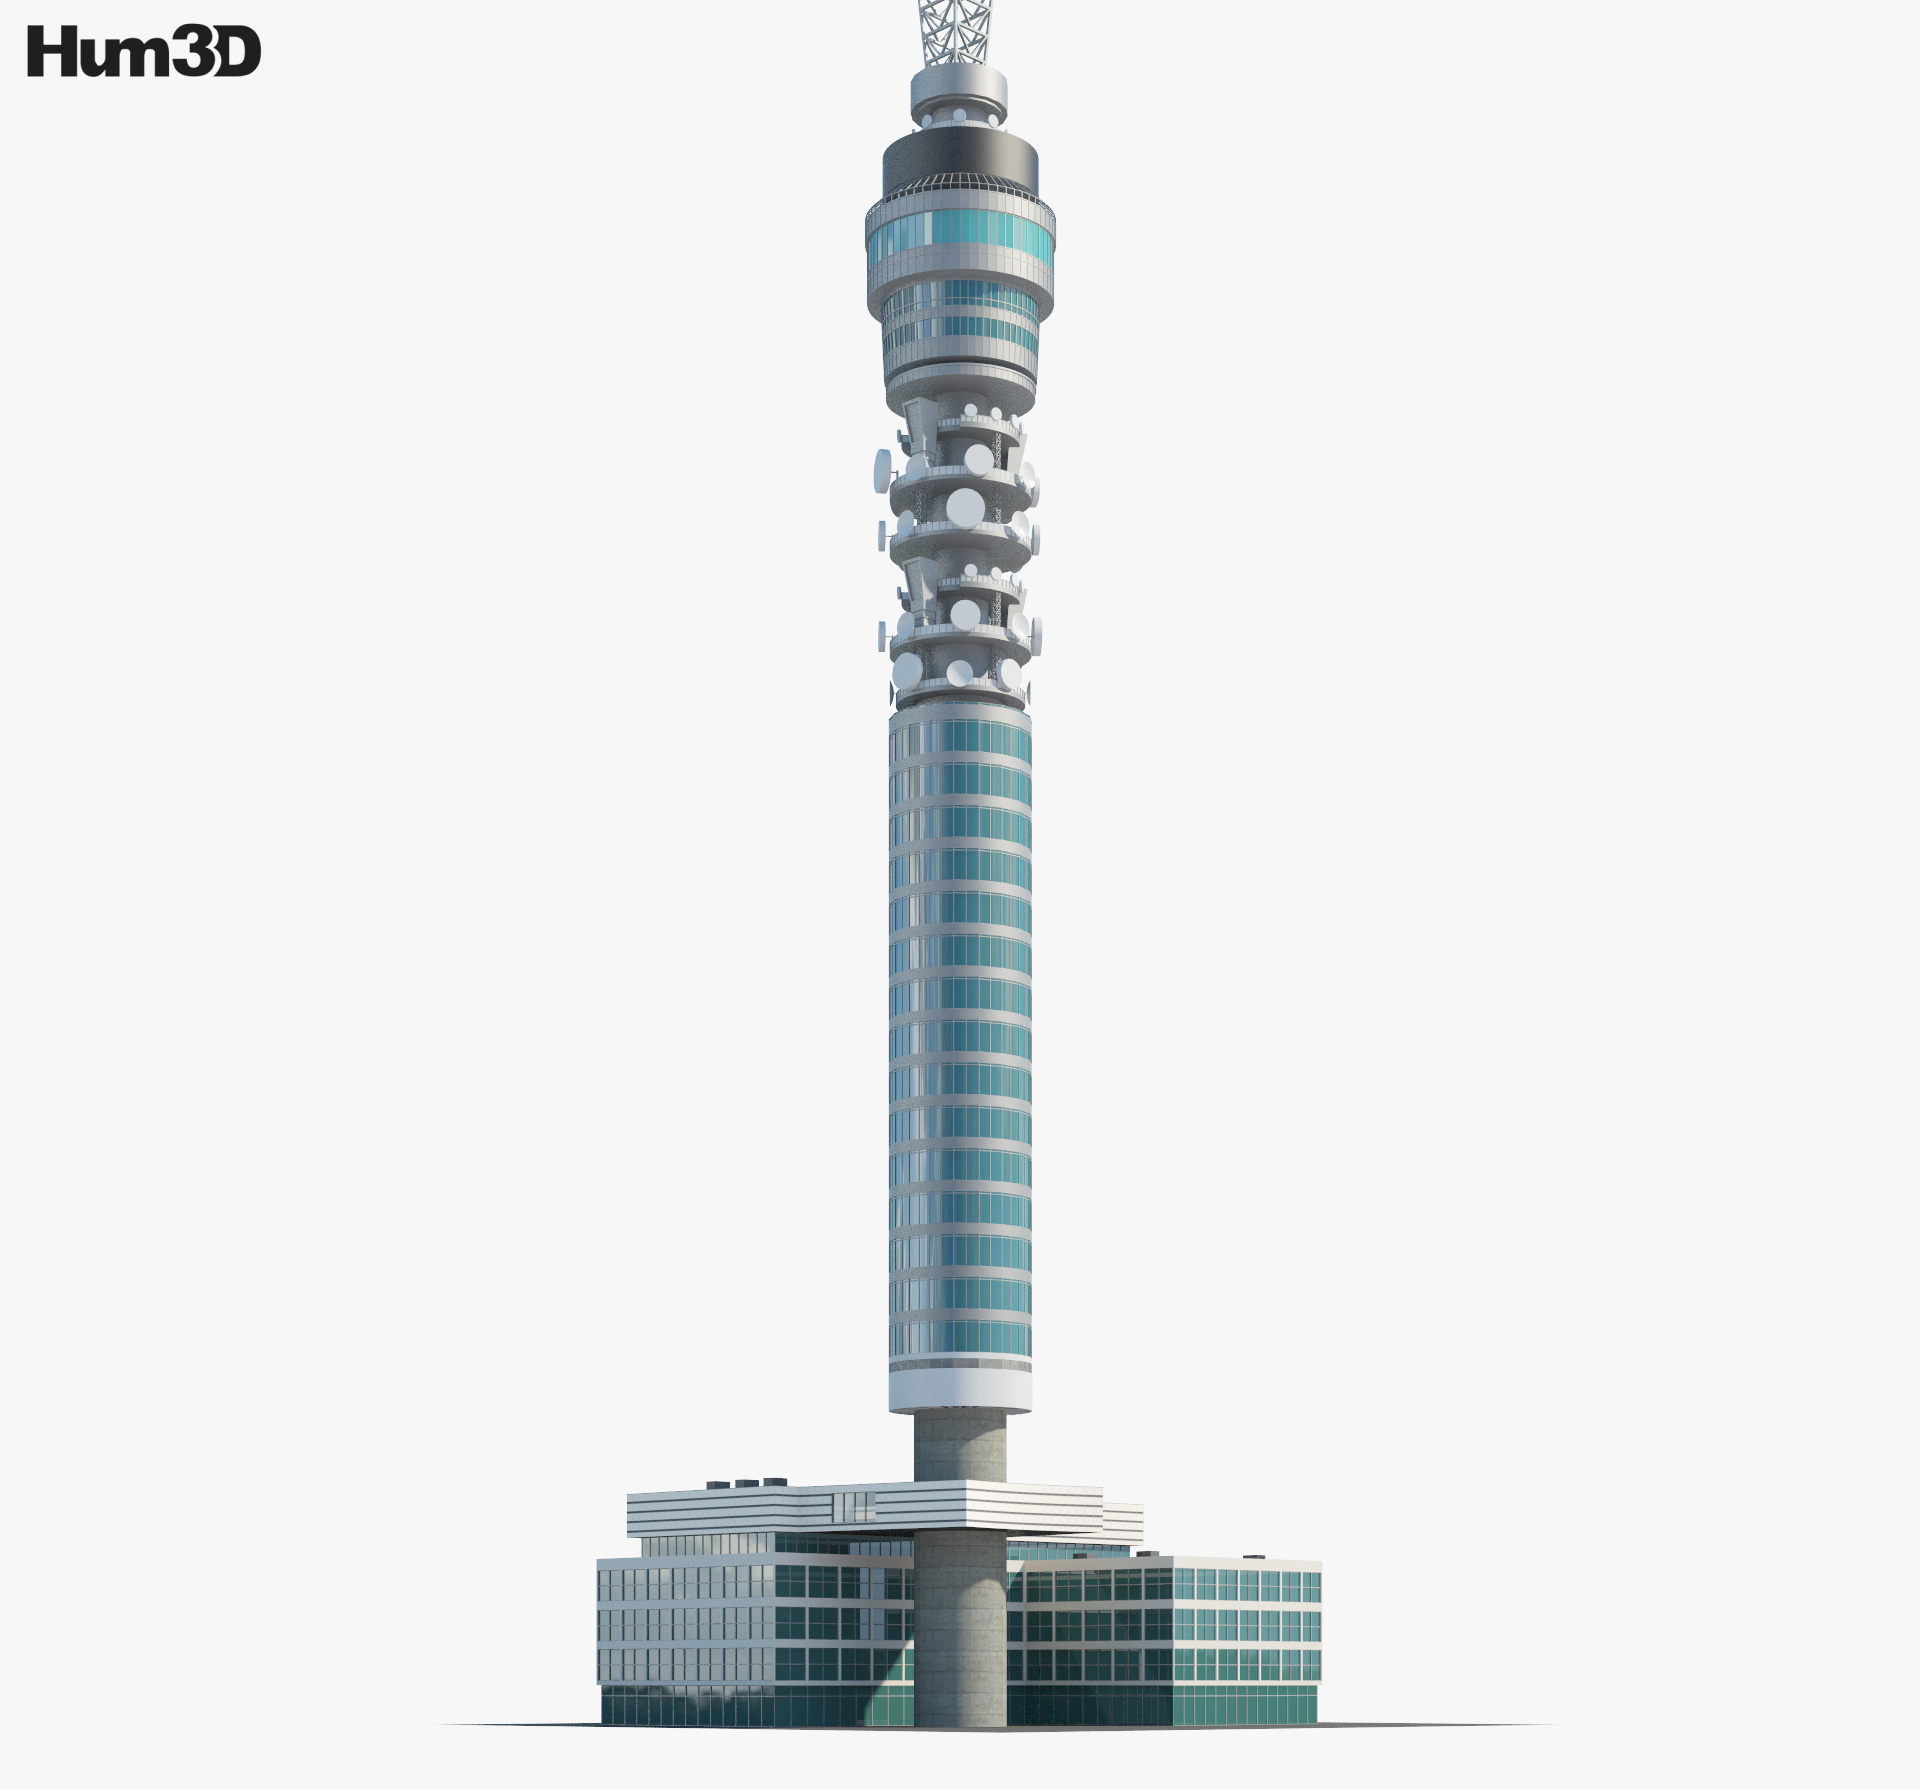 BT Tower 3d model